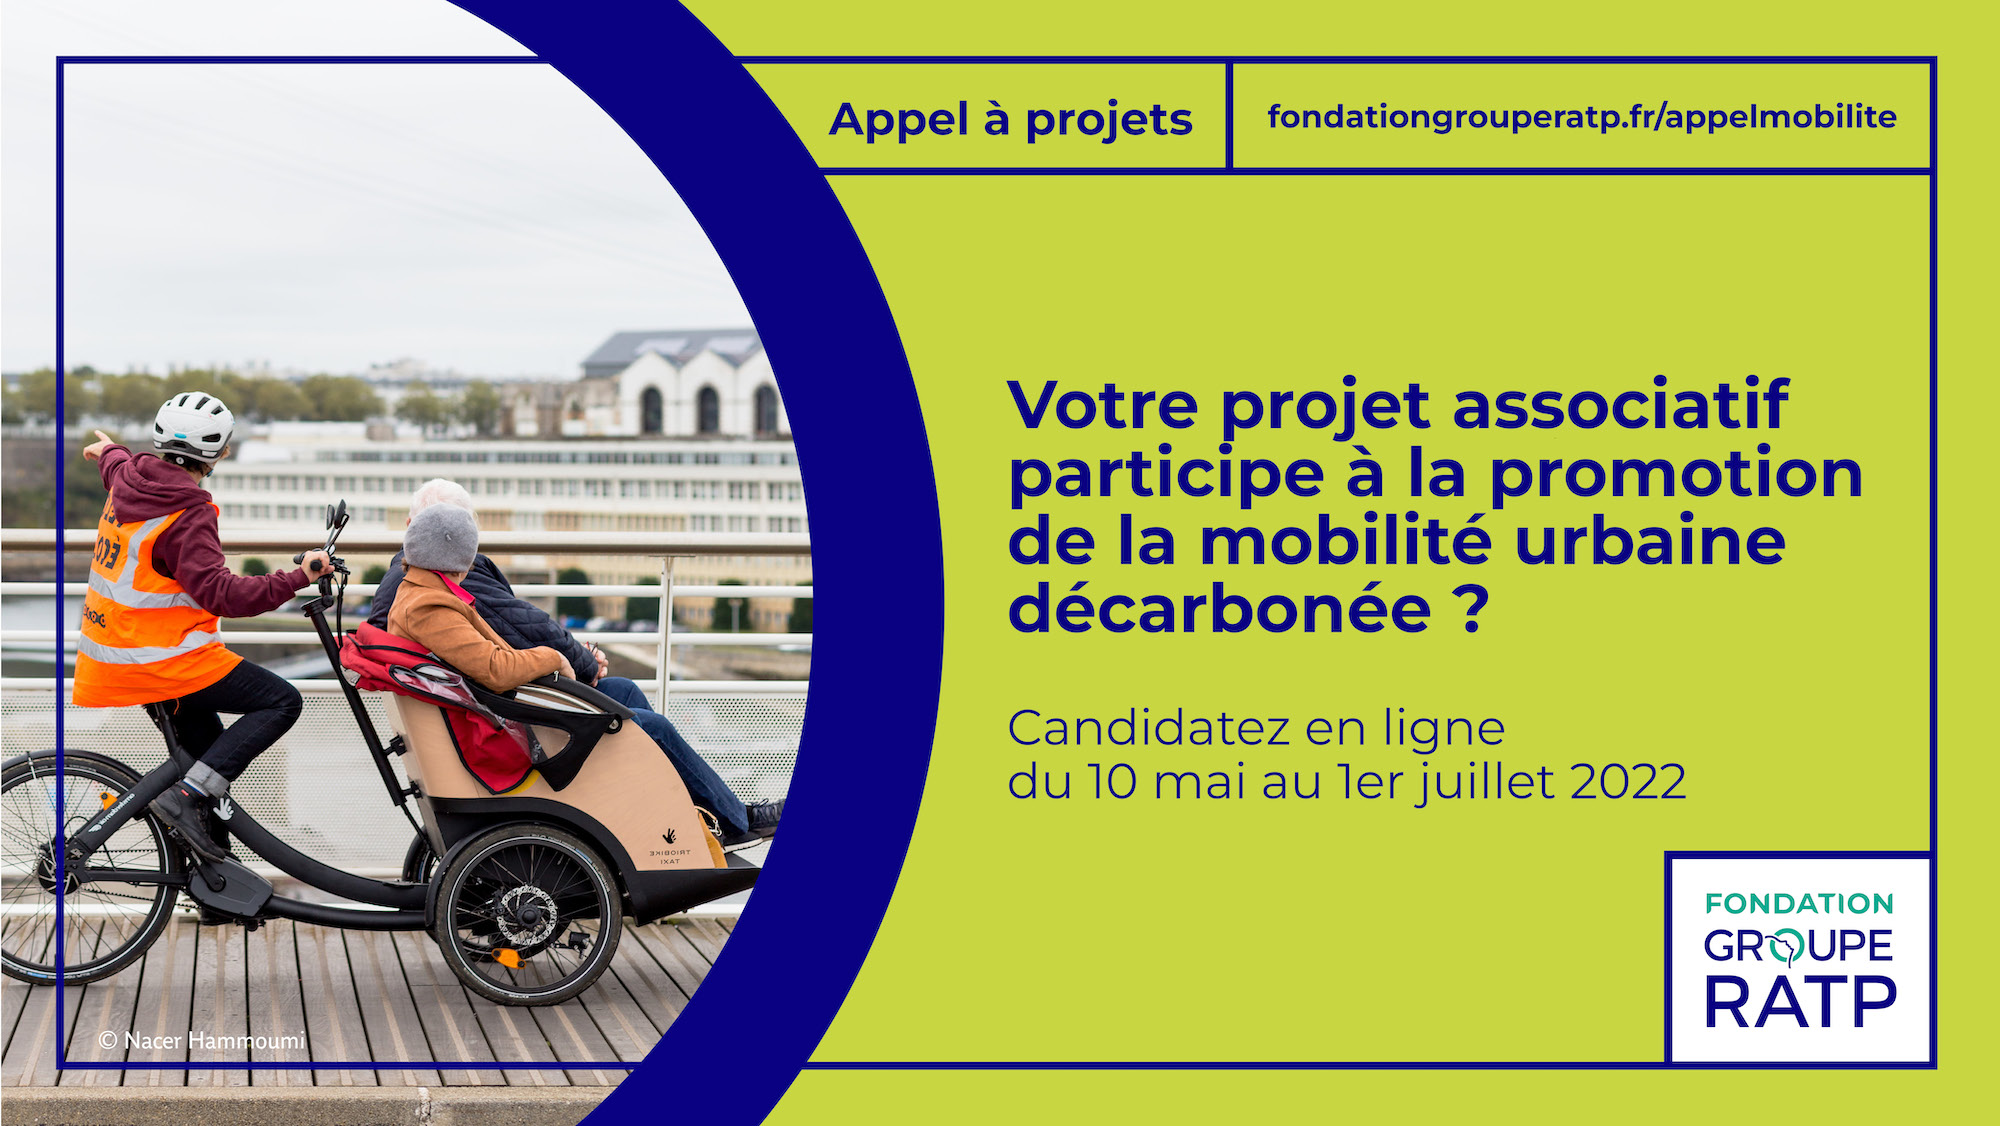 Visuel En quoi consiste l’appel à projets sur la mobilité décarbonée de la Fondation Groupe RATP ?